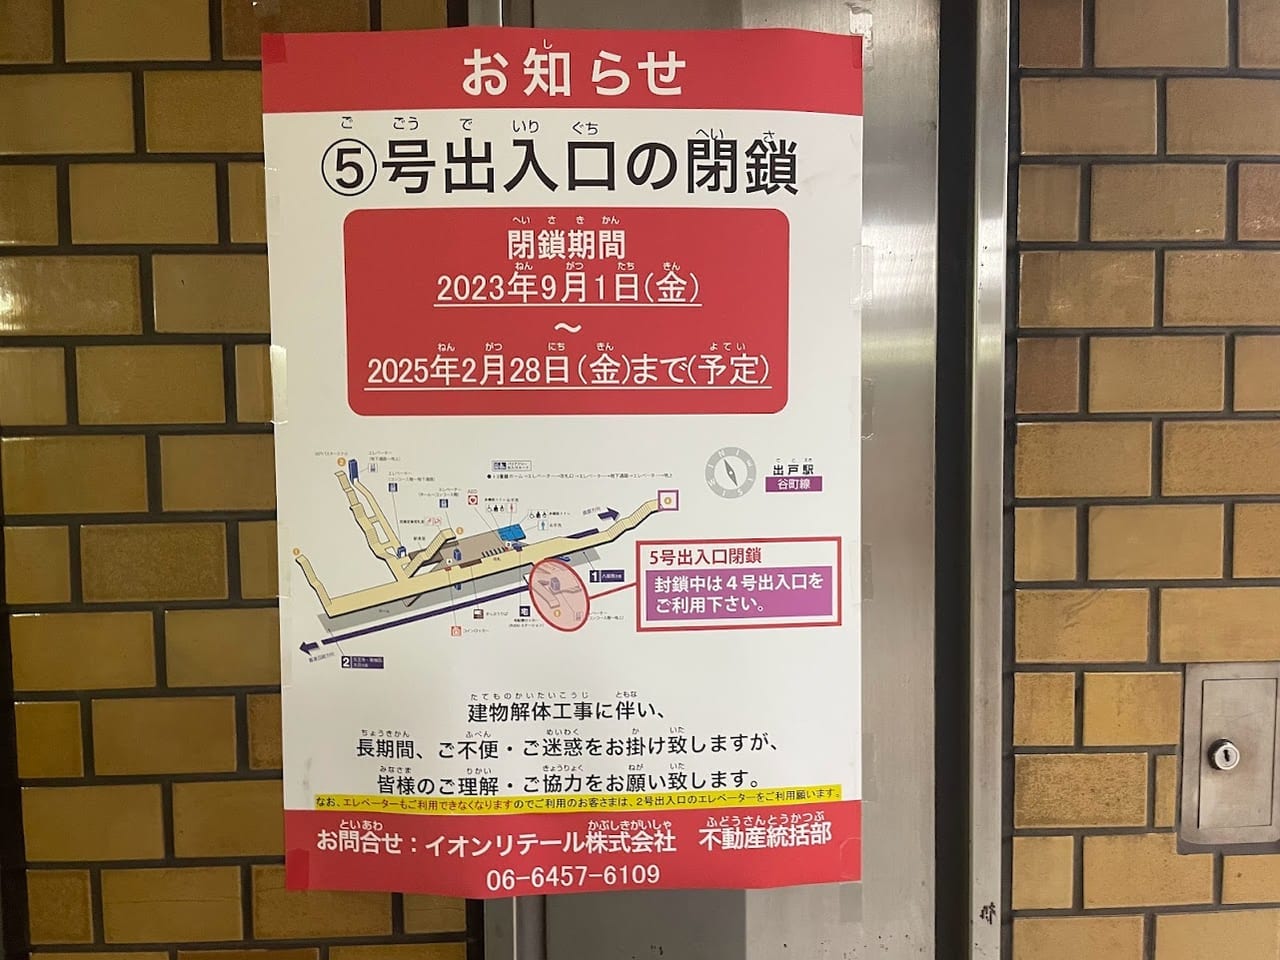 大阪メトロ谷町線5号出入口閉鎖のお知らせ